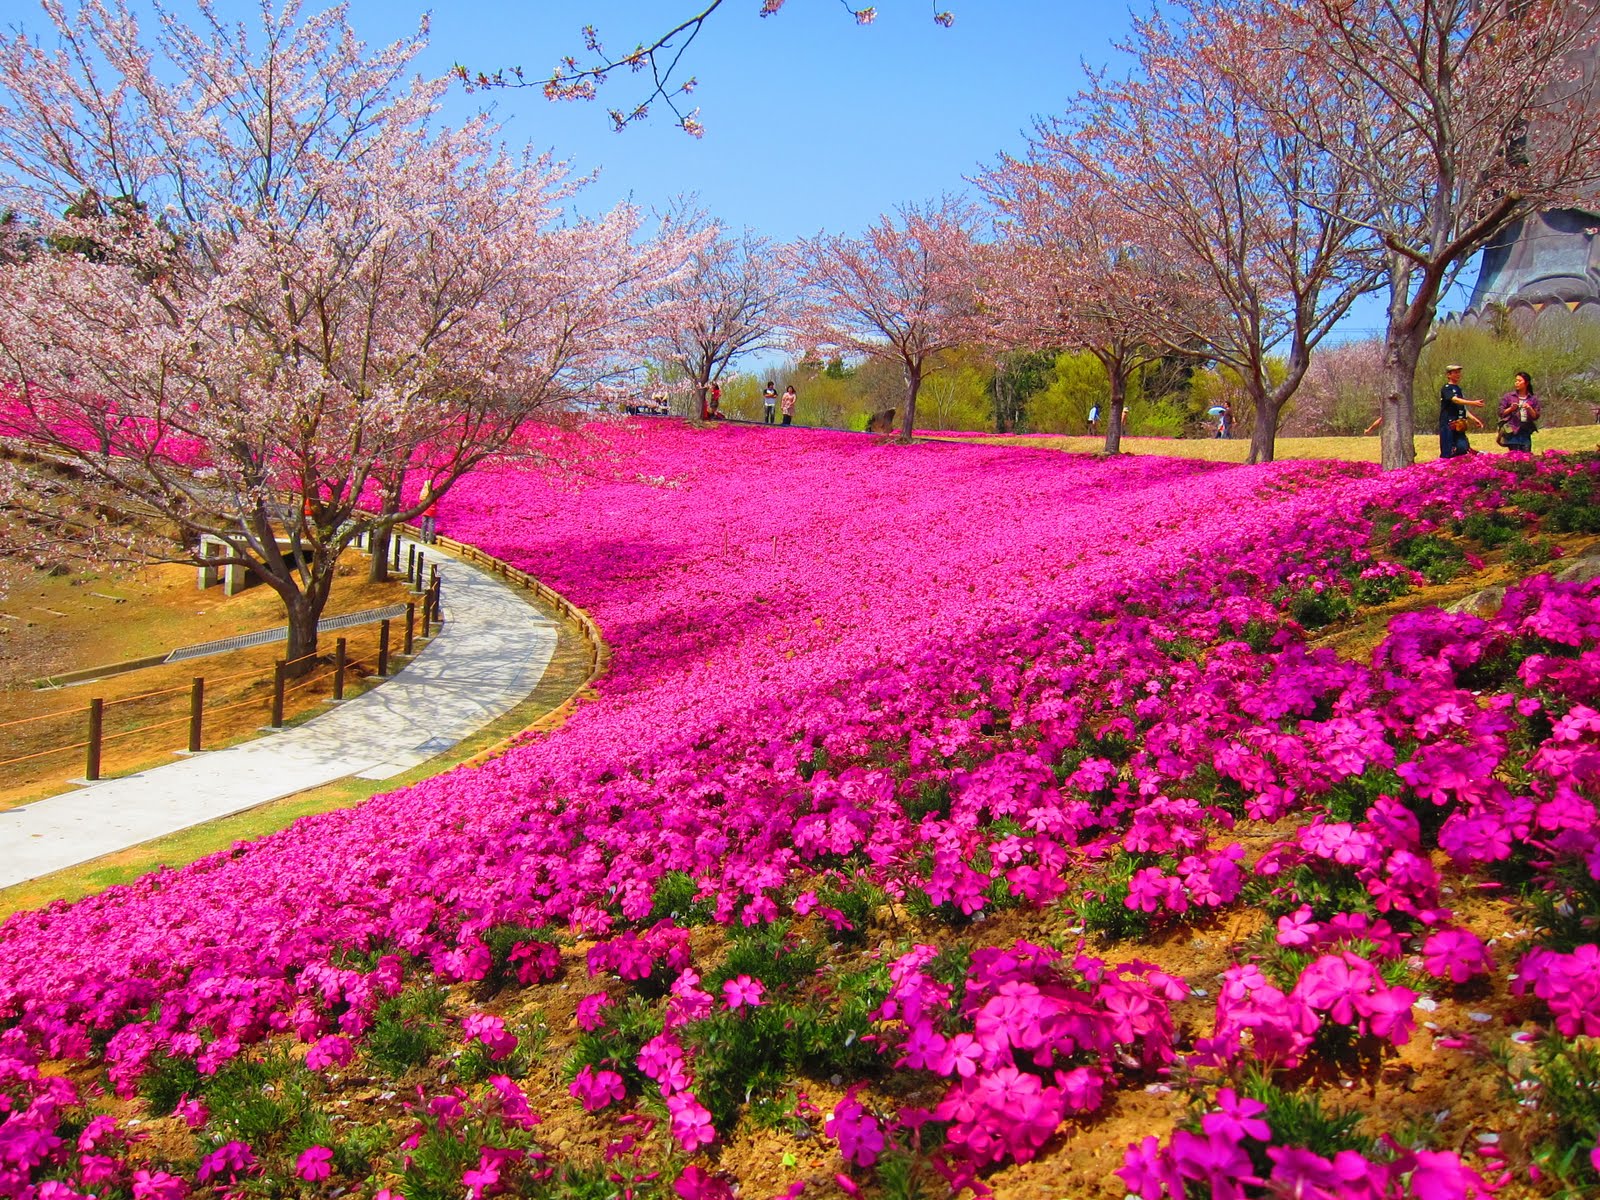 Download Gambar Taman Bunga Terindah Di Dunia - KibrisPDR